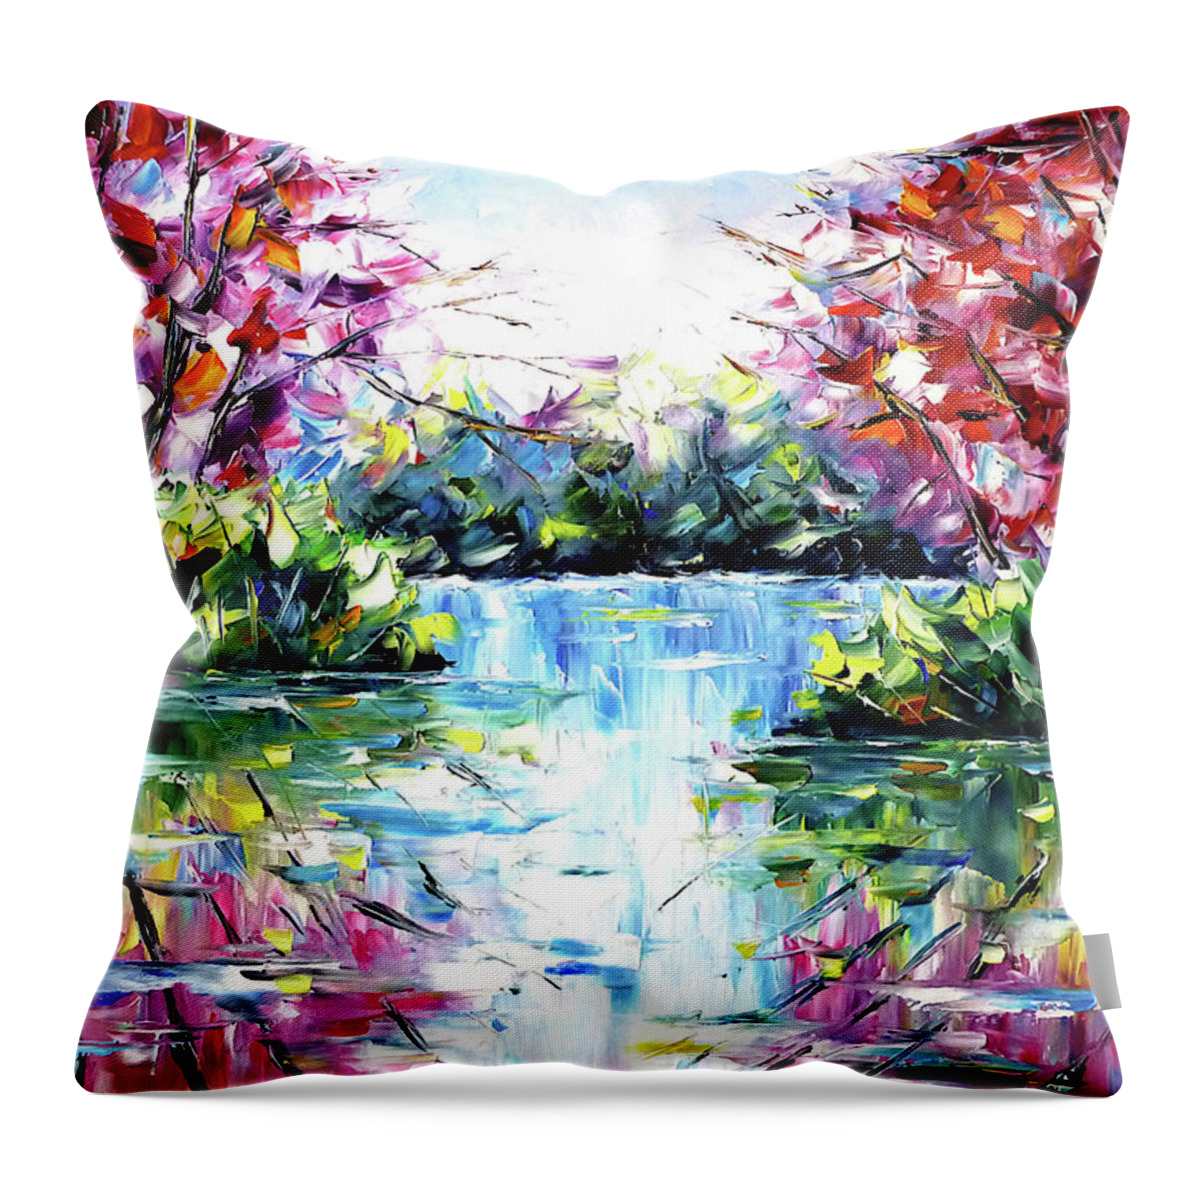 Morning Fog Throw Pillow featuring the painting Autumnal Lake by Mirek Kuzniar